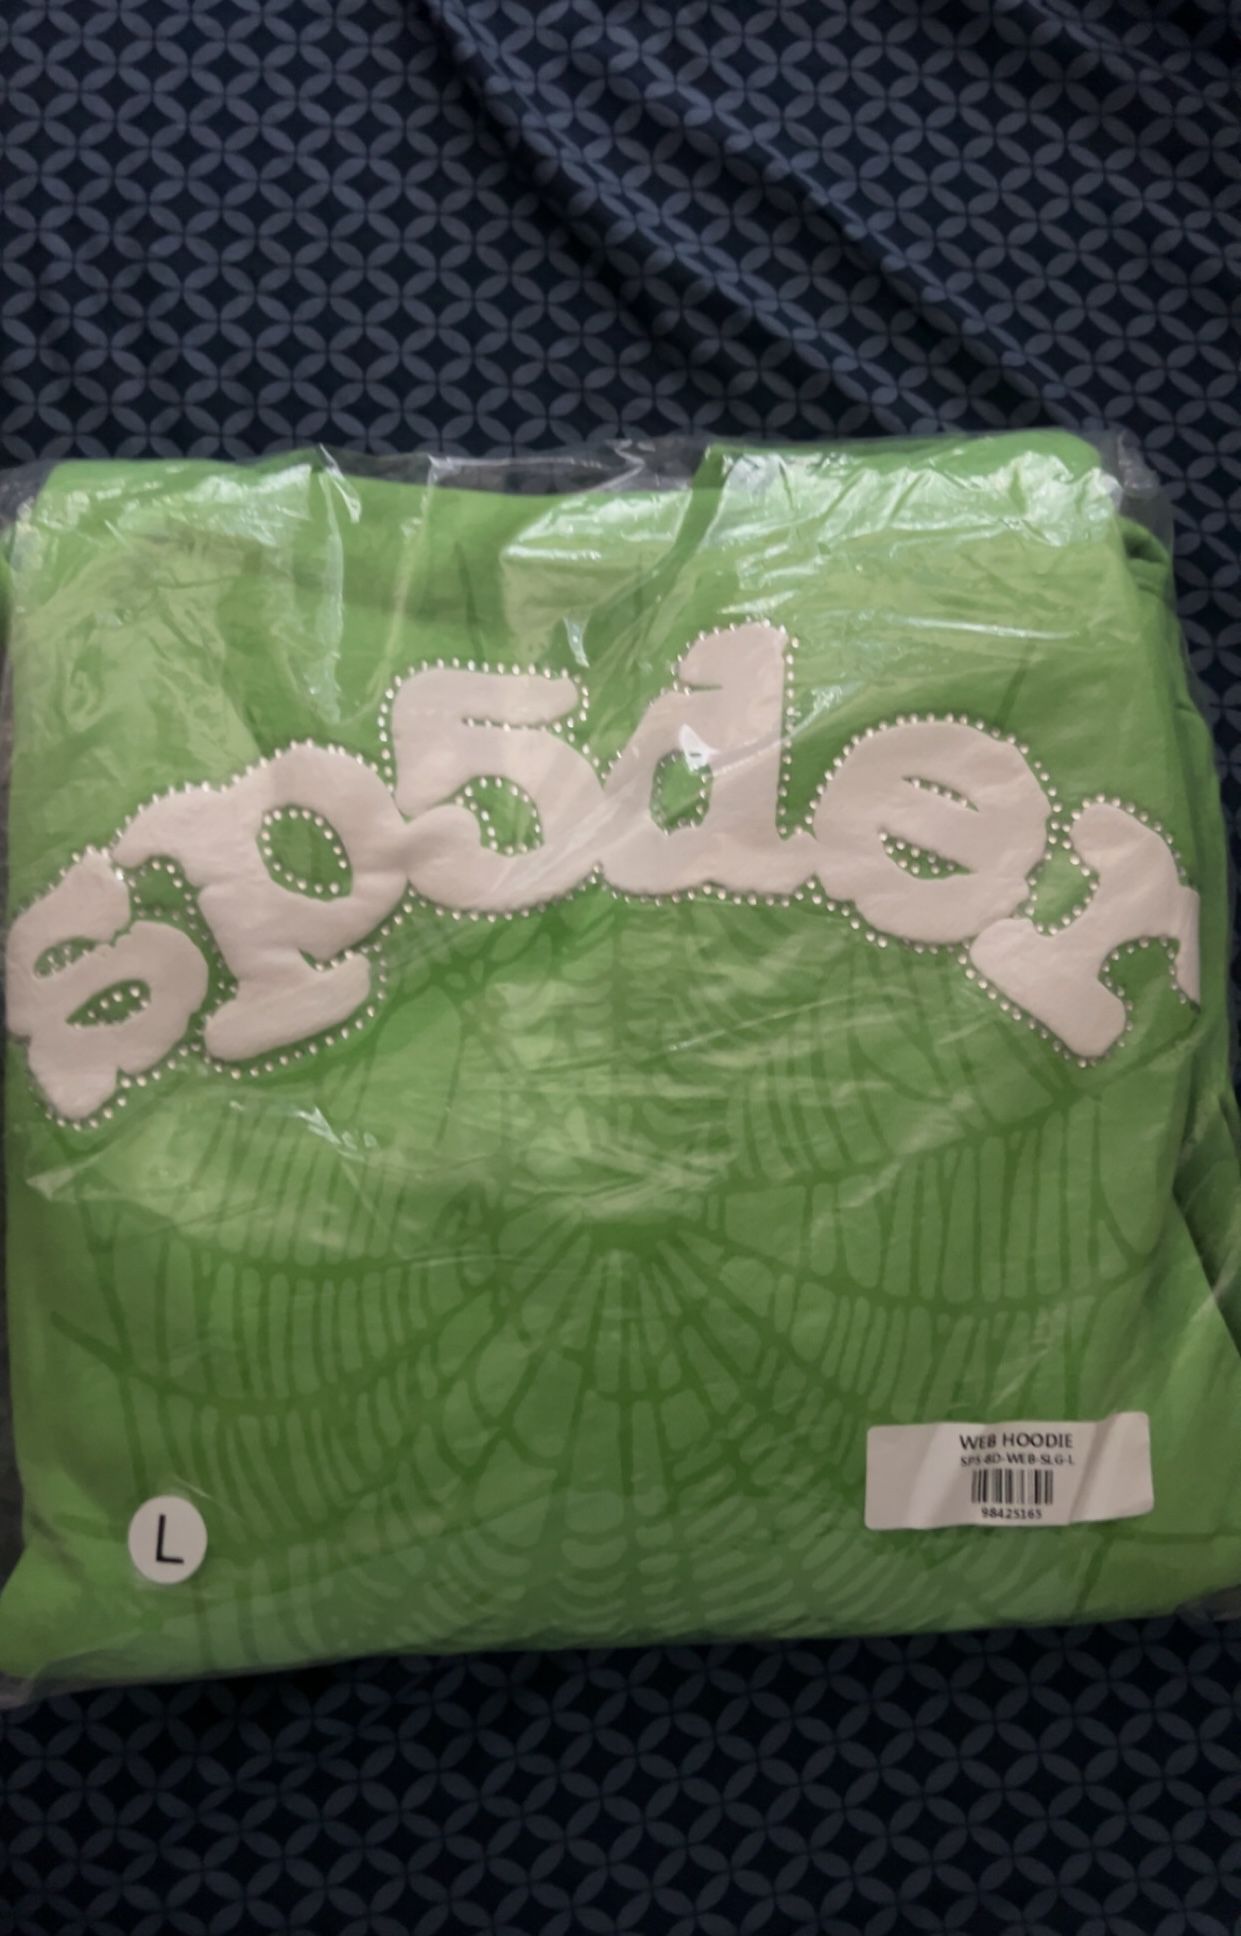 Slime Green Sp5der hoodie